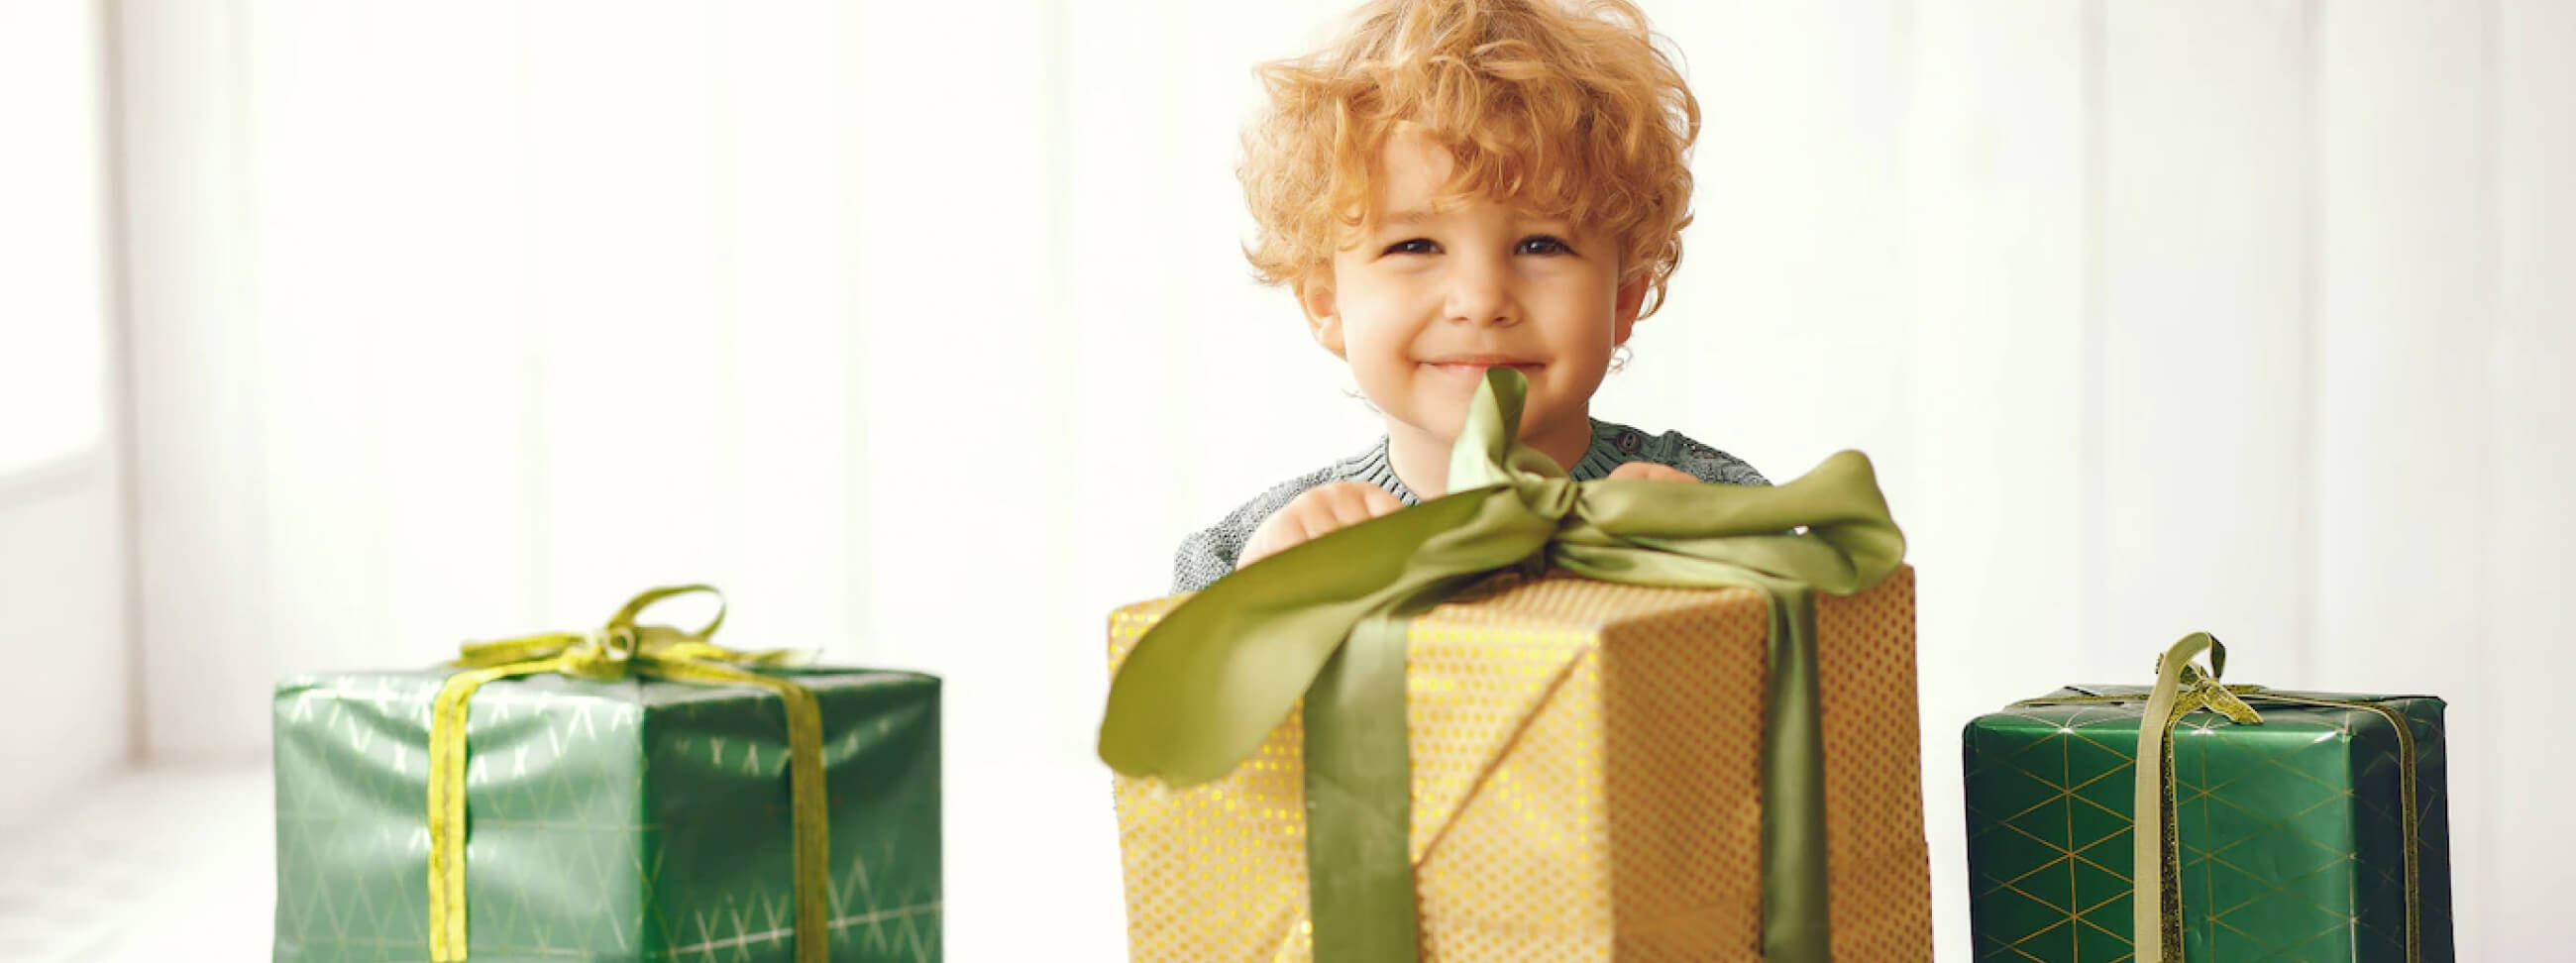 Баннер ребенок с подарками